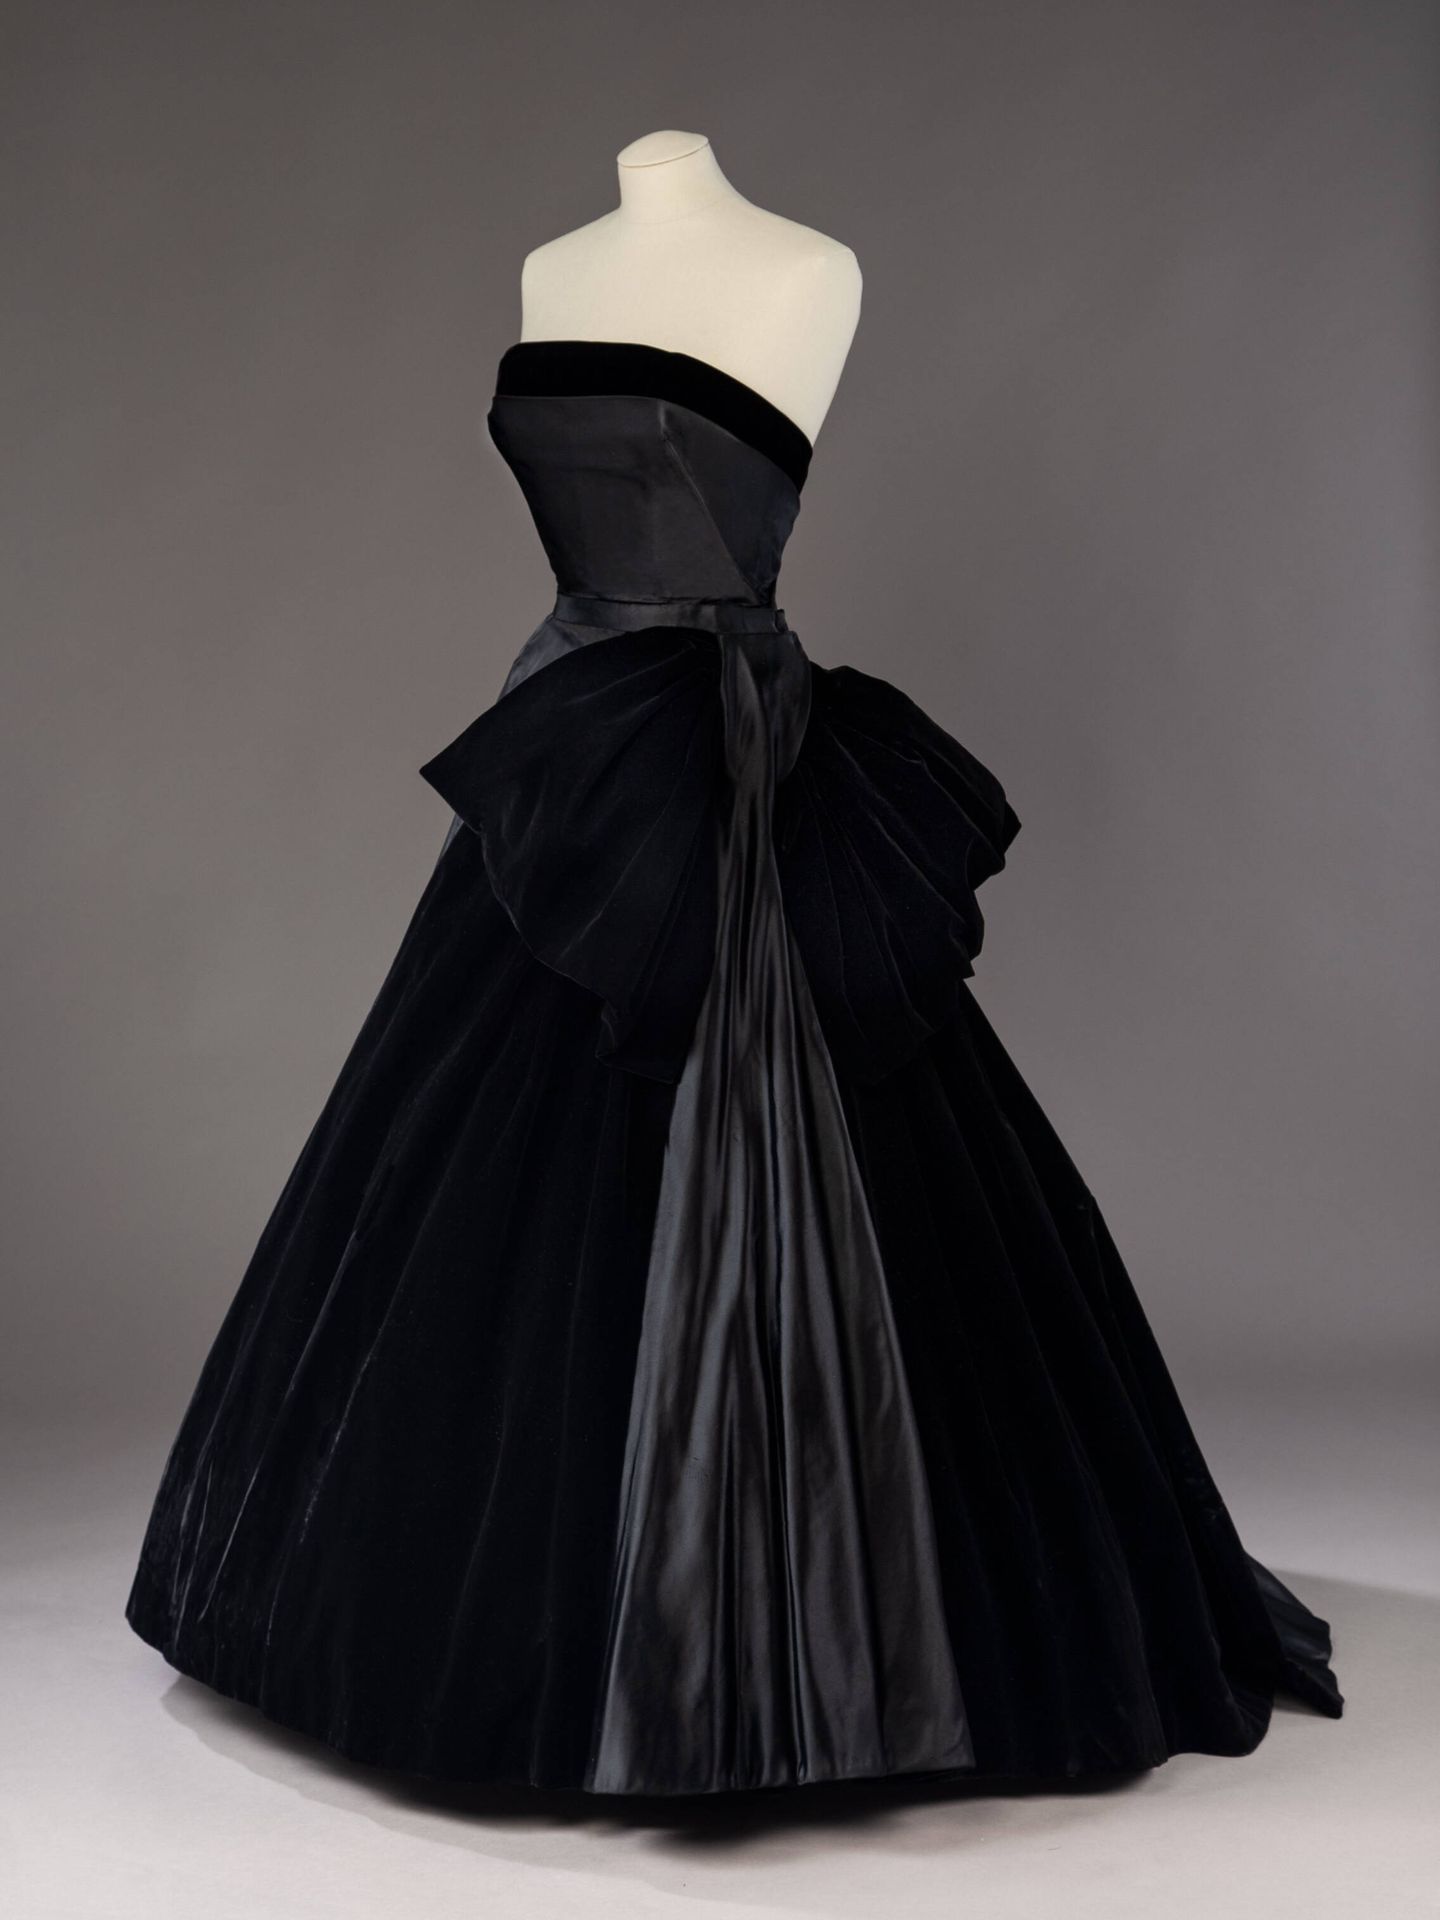 Un modelo Cygne Noir en el Museo de Arte Metropolitano de Nueva York. (Cortesía)